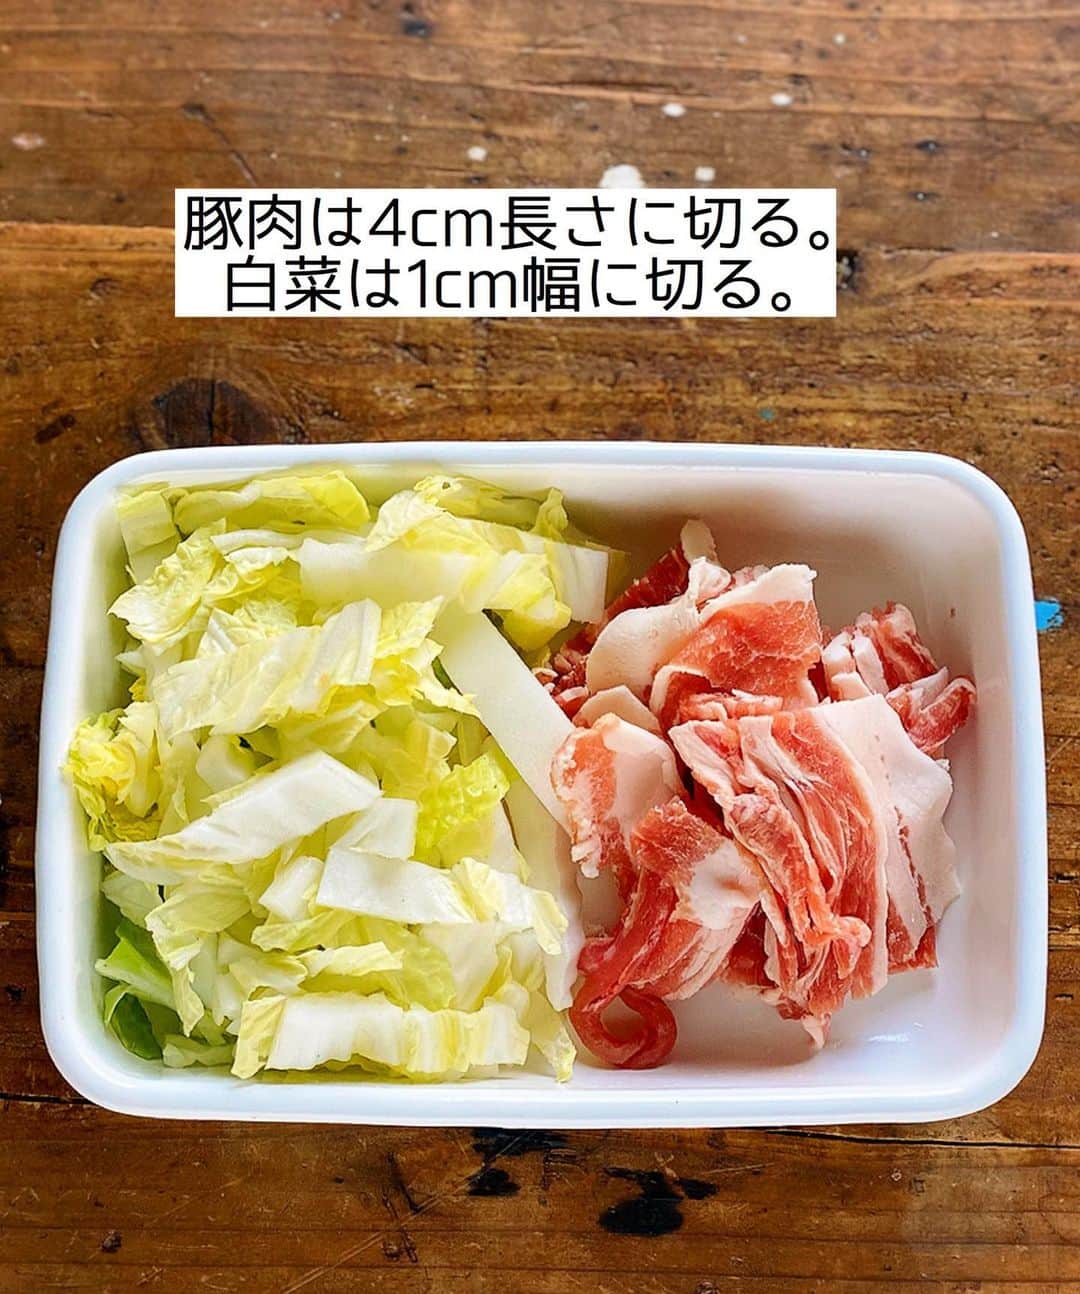 Mizuki【料理ブロガー・簡単レシピ】さんのインスタグラム写真 - (Mizuki【料理ブロガー・簡単レシピ】Instagram)「・﻿ 【#レシピ 】ーーーーーーーーーー﻿ ♡白菜入りチゲ風おかずスープ♡﻿ ーーーーーーーーーーーーーーーー﻿ ﻿ 　﻿ ﻿ おはようございます(*^^*)﻿ ﻿ 今日ご紹介させていただくのは﻿ \ 白菜入りチゲ風おかずスープ /﻿ ﻿ お鍋ひとつでできて﻿ 具沢山で栄養たっぷり♡﻿ 食べ応えもじゅうぶんで﻿ しっかりおかずになりますよ〜♩﻿ ﻿ さっと炒めて3分煮るだけ！の﻿ 超簡単レシピです(*´艸`)﻿ とってもごはんがすすむので﻿ よかったらお試し下さいね(*^^*)﻿ ﻿ ﻿ ﻿ ＿＿＿＿＿＿＿＿＿＿＿＿＿＿＿＿＿＿＿＿﻿ 【2〜3人分】﻿ 豚バラ薄切り肉...100g﻿ 白菜...100g﻿ 白菜キムチ...100g﻿ 木綿豆腐...1/2丁(150g)﻿ ごま油...小1﻿ ●水...500ml﻿ ●味噌...大1.5﻿ ●鶏がらスープ...小1﻿ すりごま...大1﻿ ﻿ 1.豚肉は4cm長さに切る。白菜は1cm幅に切る。﻿ 2.鍋にごま油を中火で熱し、1とキムチを炒める。豚肉に火が通ったら●を加えて味噌を溶かす。﻿ 3.豆腐をひと口大にちぎり入れて3分煮込み、仕上げにすりごまを加える。﻿ ￣￣￣￣￣￣￣￣￣￣￣￣￣￣￣￣￣￣￣￣﻿ ﻿ ﻿ ﻿ 《ポイント》﻿ ♦︎合わせ味噌(マルコメ)を使用しています♩﻿ ♦︎辛味はキムチだけで辛さは控えめです♩﻿ ♦︎豆腐は絹ごし豆腐でも♩﻿ ﻿ ﻿ ﻿ ﻿ ﻿ ﻿ ﻿ 💬💬💬﻿ お約束のチョコテリーヌを﻿ YouTubeにアップしました🥰﻿ ハイライトから飛べるので﻿ よかったらお試し下さいね💕﻿ YouTube→《奇跡のキッチン》で検索🔍﻿ ﻿ ﻿ ﻿ ﻿ ﻿ ﻿ ＿＿＿＿＿＿＿＿＿＿＿＿＿＿＿＿＿＿﻿ 🎁器プレゼントキャンペーン実施中🎁﻿ ￣￣￣￣￣￣￣￣￣￣￣￣￣￣￣￣￣￣﻿ おかげざで［今どき和食］が10刷増版となりました✨﻿ そこで心ばかりですが感謝の気持ちをお伝えしたく﻿ 《器プレゼントキャンペーンを実施中です♩》﻿ ▼ ▼ ▼﻿ ＿＿＿＿＿＿＿＿＿﻿ 【プレゼント内容】﻿ ￣￣￣￣￣￣￣￣￣﻿ 今人気の波佐見焼 大皿1枚﻿ もしくは小皿2枚セットを15名様に﻿ ＿＿＿＿＿＿＿＿＿﻿ 【応募方法】﻿ ￣￣￣￣￣￣￣￣￣﻿ ❶［Mizukiの今どき和食］から﻿ 1品ご自身で作った料理画像、﻿ もしくはカバー(表紙)画像を準備。﻿ ❷［#Mizukiの今どき和食器プレゼント ］﻿ のタグを付けて投稿！﻿ (以上で応募完了です😊　2/14〆切)﻿ _________________________________﻿ ﻿ 　﻿ ﻿ ﻿ ﻿ ﻿ ⭐️発売中⭐️﻿ ＿＿＿＿＿＿＿＿＿＿＿＿＿＿＿＿＿＿﻿ ホケミレシピの決定版♩﻿ \はじめてでも失敗しない/﻿ 📙#ホットケーキミックスのお菓子 📙﻿ ﻿ NHKまる得マガジンテキスト☆﻿ ホットケーキミックスで﻿ 📗絶品おやつ&意外なランチ📗﻿ ﻿ しんどくない献立、考えました♩﻿ \15分でいただきます/﻿ 📕#Mizukiの2品献立 📕﻿ ﻿ 和食をもっとカジュアルに♩﻿ \毎日のごはんがラクになる/﻿ 📘Mizukiの今どき和食 📘﻿ ﻿ 重版しました！﻿ ありがとうございます😭﻿ 📗ラクしておいしい！#1品晩ごはん 📗﻿ ﻿ 摂食障害から料理研究家になるまでを綴った﻿ はじめてのエッセイ本﻿ 📙#普通のおいしいをつくるひと 📙﻿ ￣￣￣￣￣￣￣￣￣￣￣￣￣￣￣￣￣￣￣﻿ ﻿ ﻿ ﻿ ﻿ ﻿ ＿＿＿＿＿＿＿＿＿＿＿＿＿＿＿＿＿＿﻿ レシピを作って下さった際や﻿ レシピ本についてのご投稿には﻿ タグ付け( @mizuki_31cafe )して﻿ お知らせいただけると嬉しいです😊💕﻿ ￣￣￣￣￣￣￣￣￣￣￣￣￣￣￣￣￣￣﻿ ﻿ ﻿ ﻿ ﻿ ﻿ #おかずスープ#白菜#キムチ#チゲ風#Mizuki#簡単レシピ#時短レシピ#節約レシピ#料理#フーディーテーブル#マカロニメイト#おうちごはん#デリスタグラマー#料理好きな人と繋がりたい#おうちごはんlover#写真好きな人と繋がりたい#foodpic#cooking#recipe#lin_stagrammer#foodporn#yummy#f52grams#チゲ風おかずスープm」2月12日 7時01分 - mizuki_31cafe